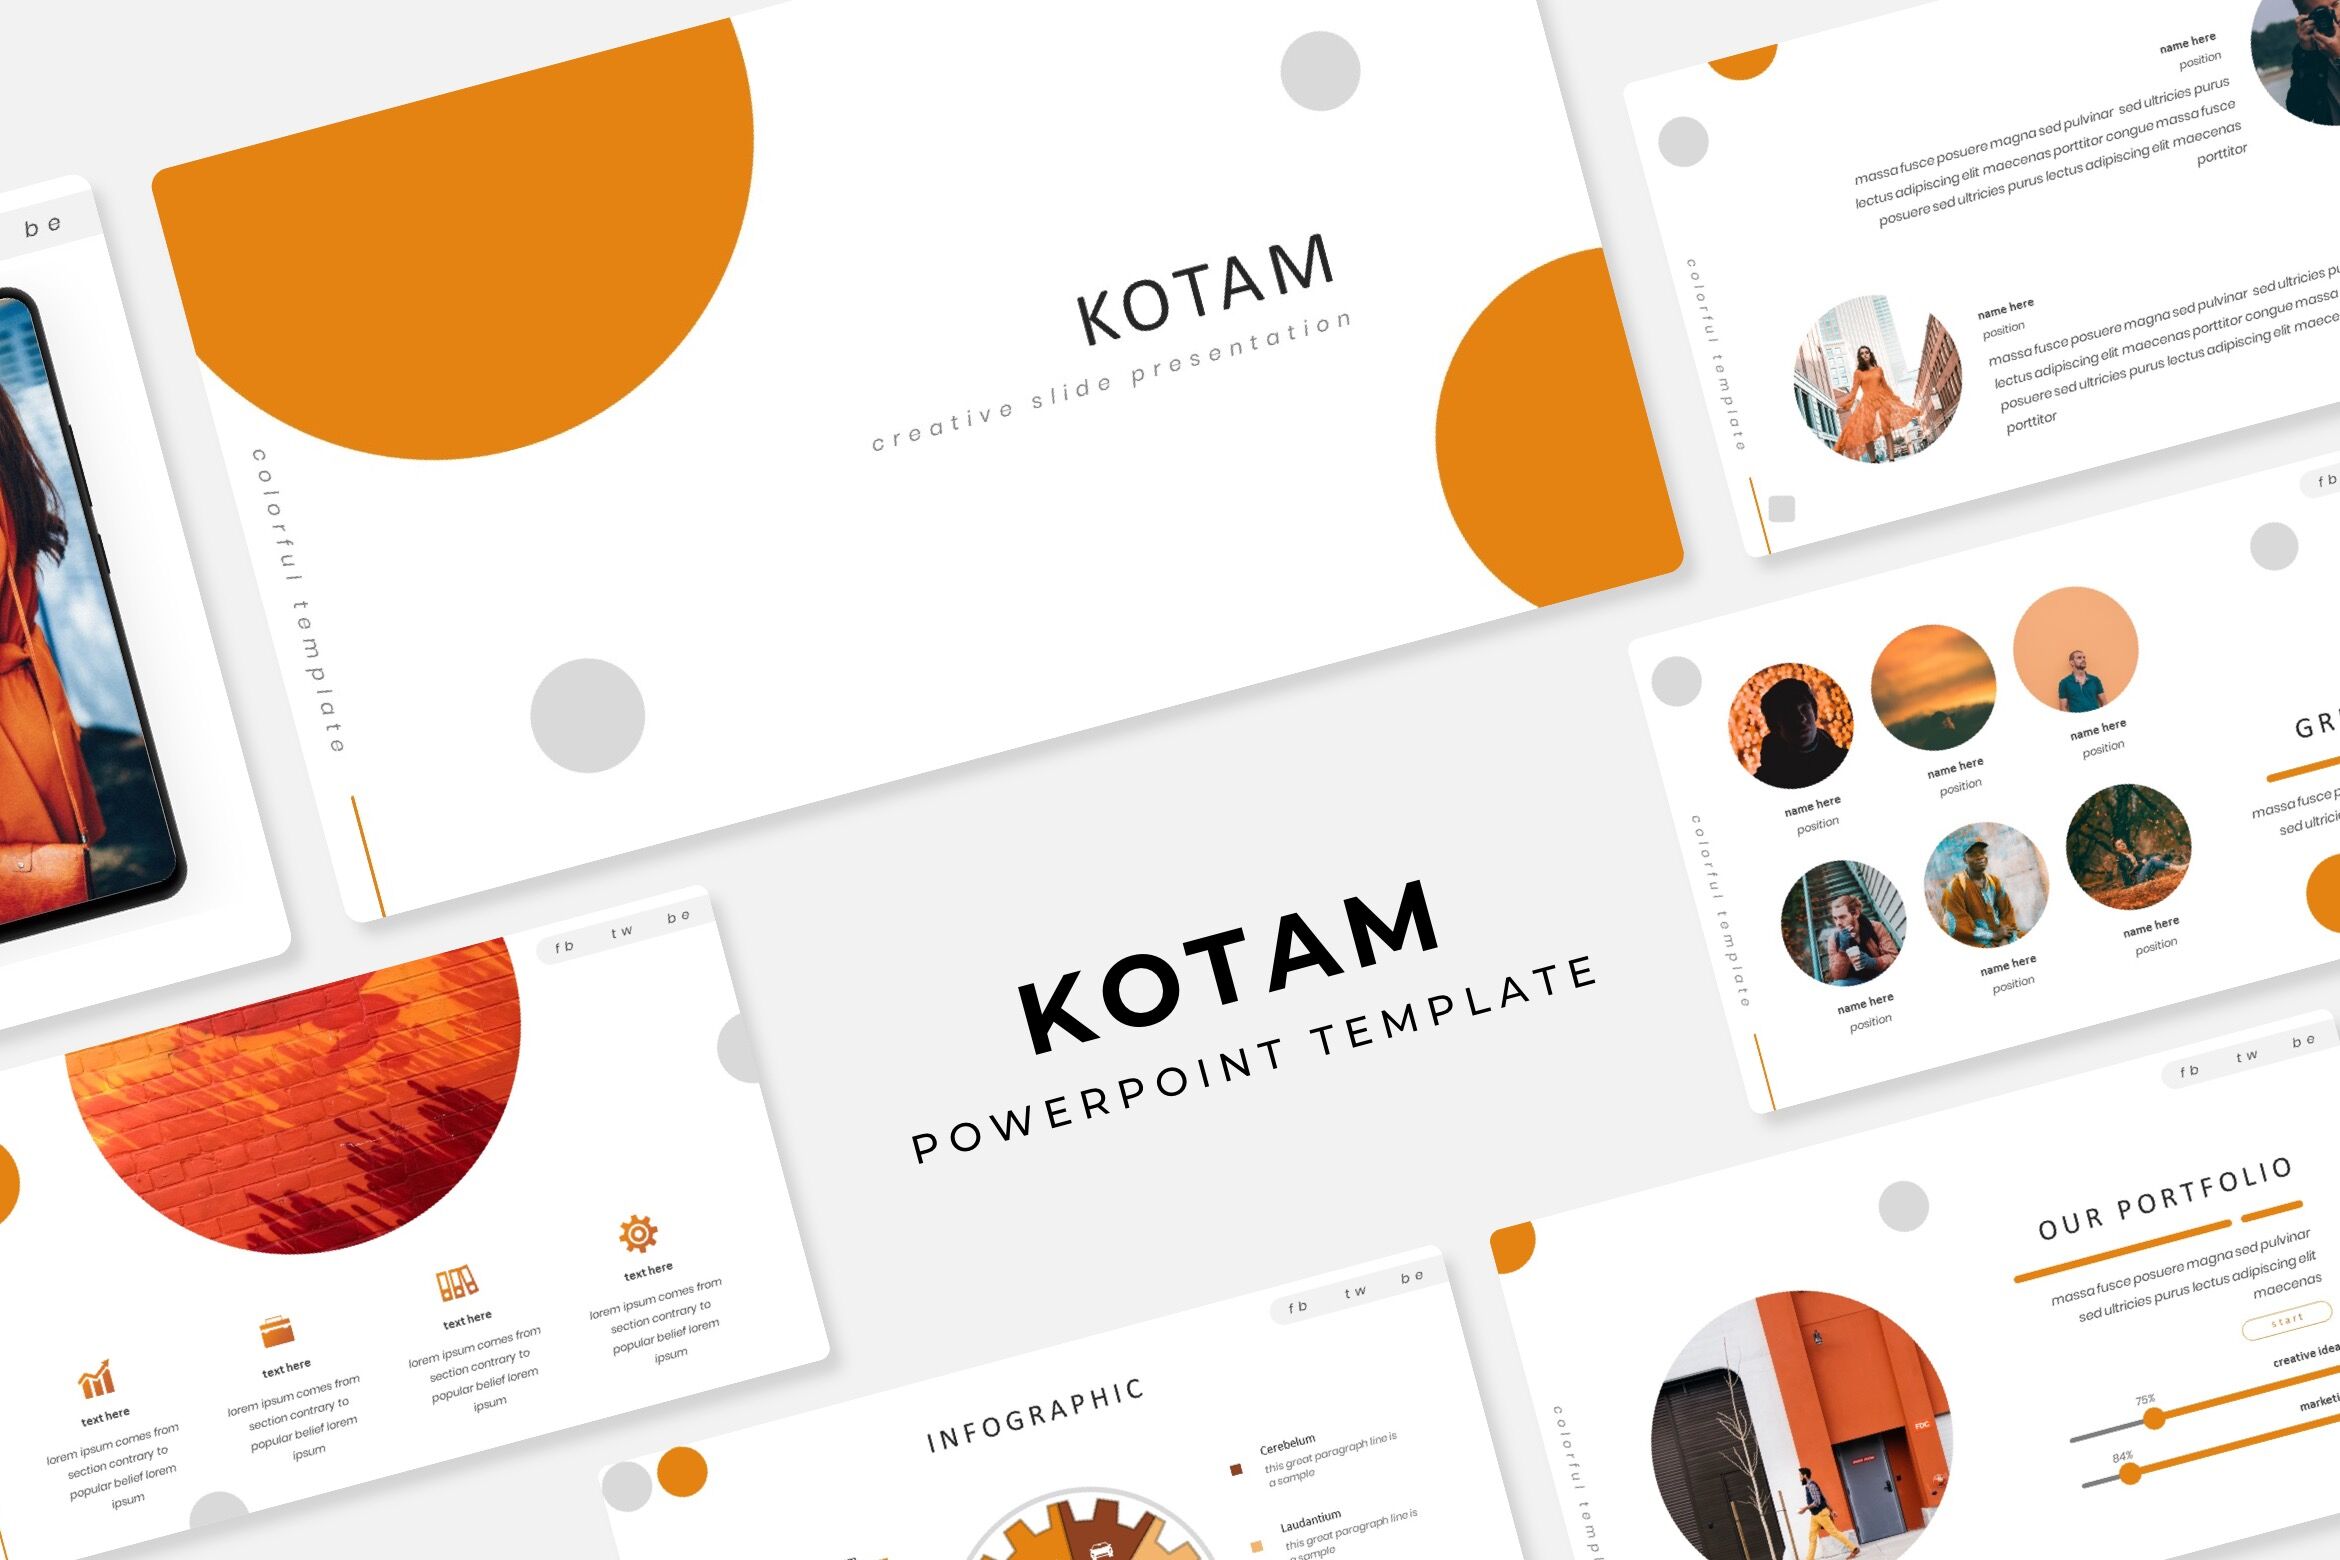 Kotam Power  Point  Template  By IanMikraz Studio 